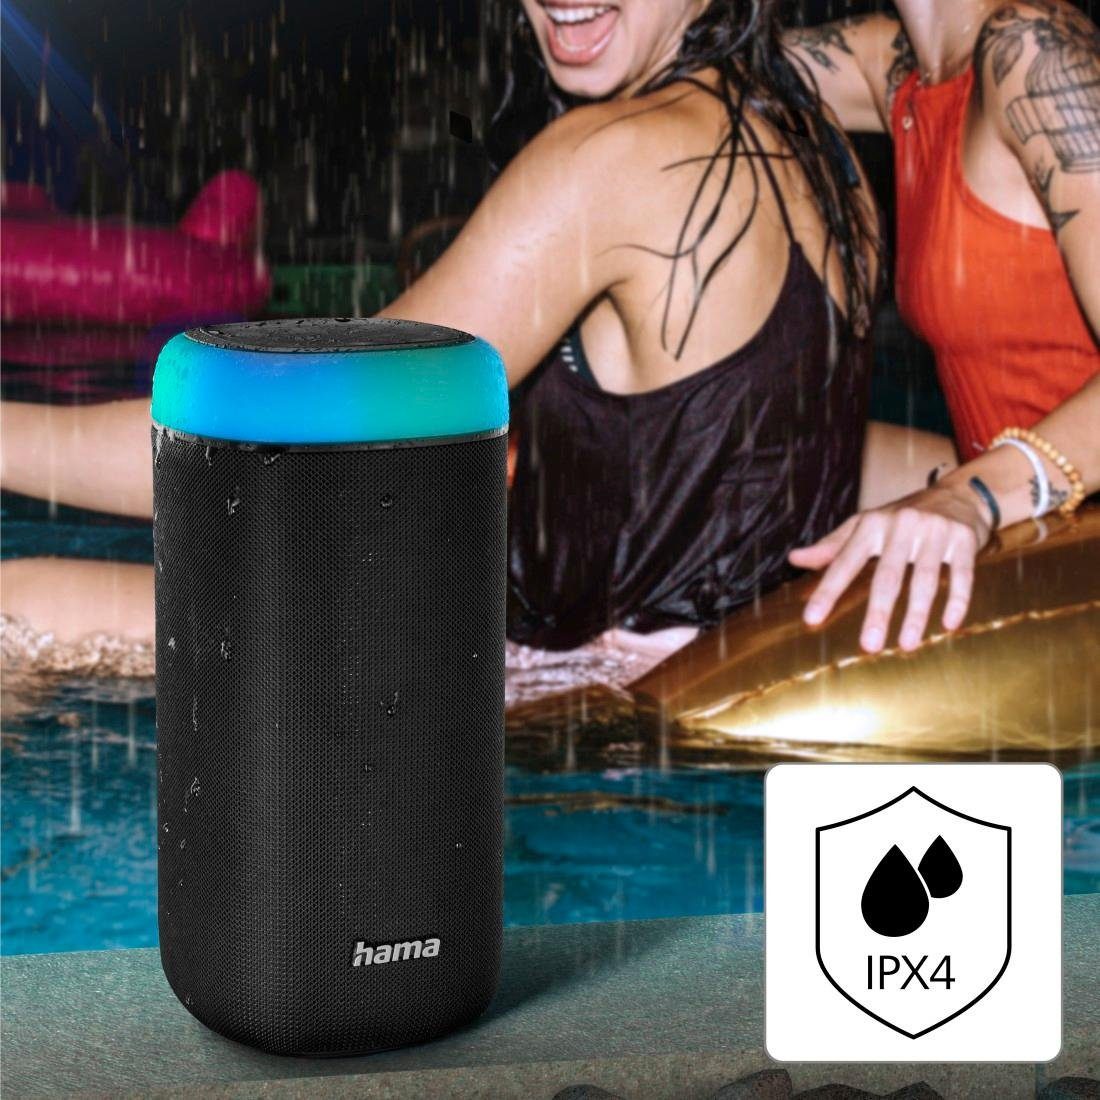 Sound) 360ᵒ spritzwassergeschützt 2.0 LED Bluetooth-Lautsprecher Bass,360ᵒ Xtra Shine Hama Bluetooth Bass schwarz (Freisprechanlage,Xtra Box Sound